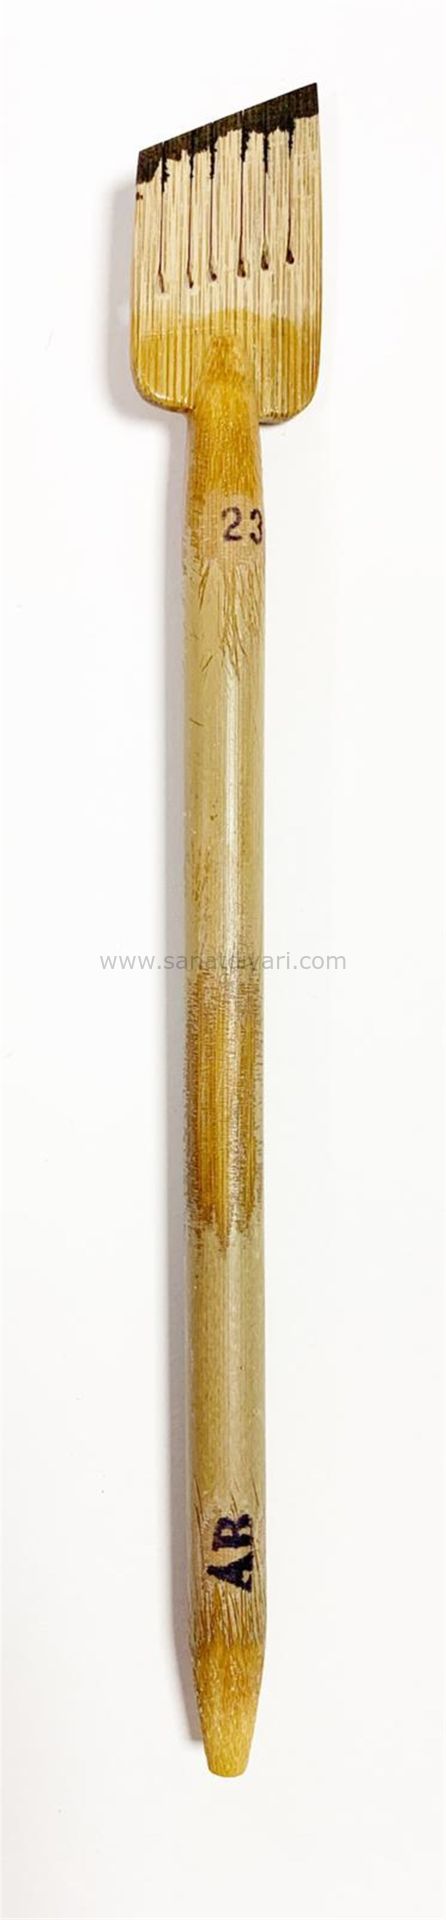 Tiryakiart Şaklı Bambu Kalem 23 mm